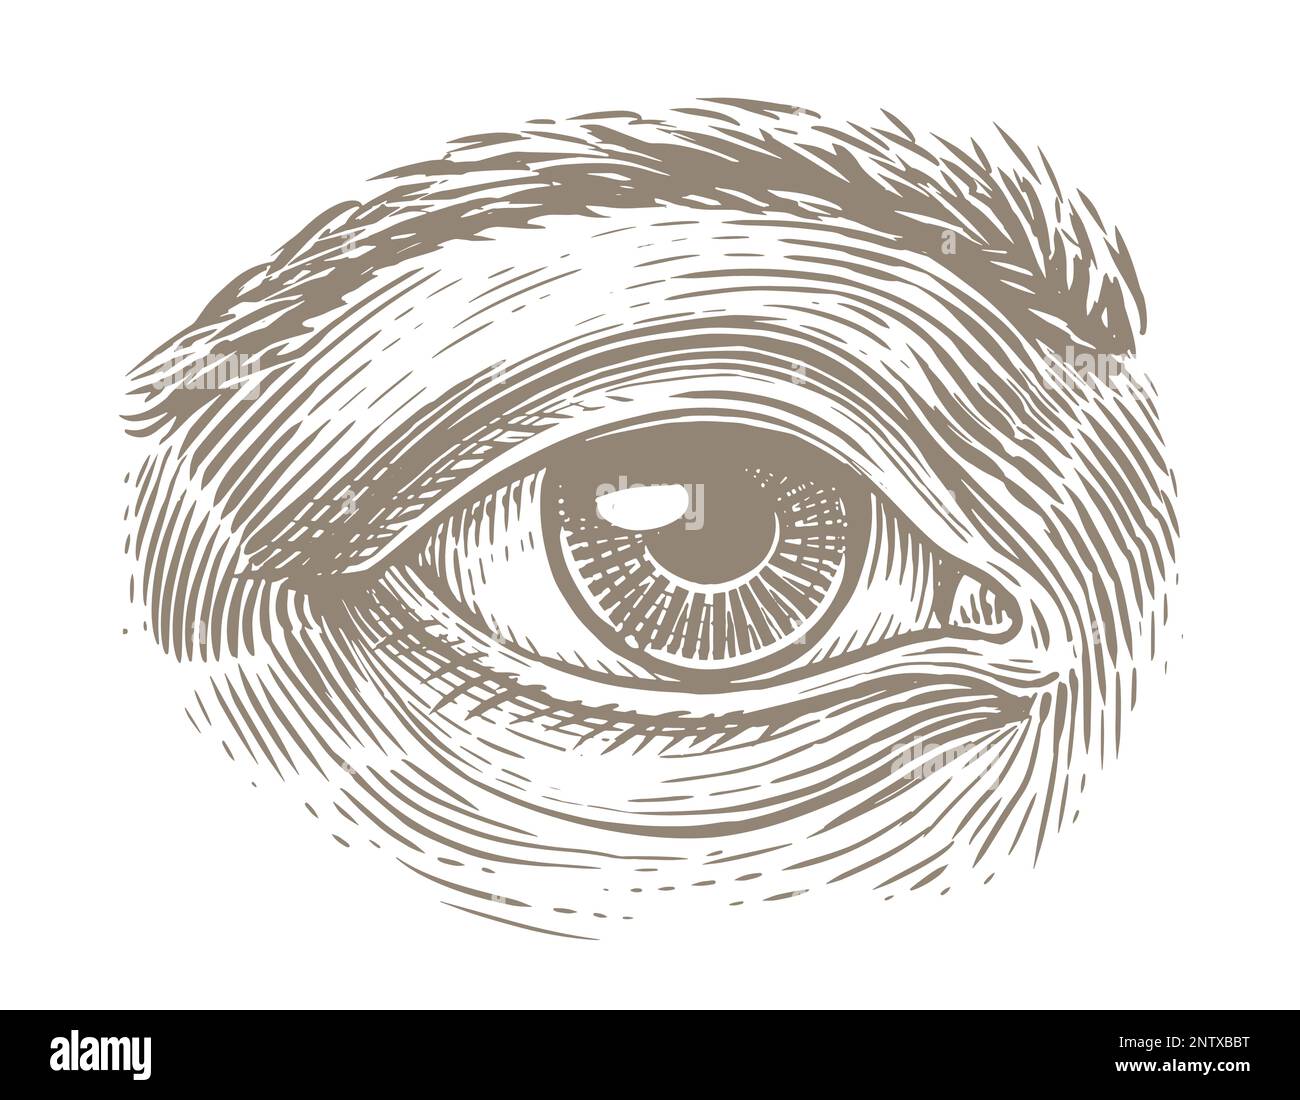 Menschliches Auge mit Gravur. Handgezeichnete Skizzenvektordarstellung Stock Vektor